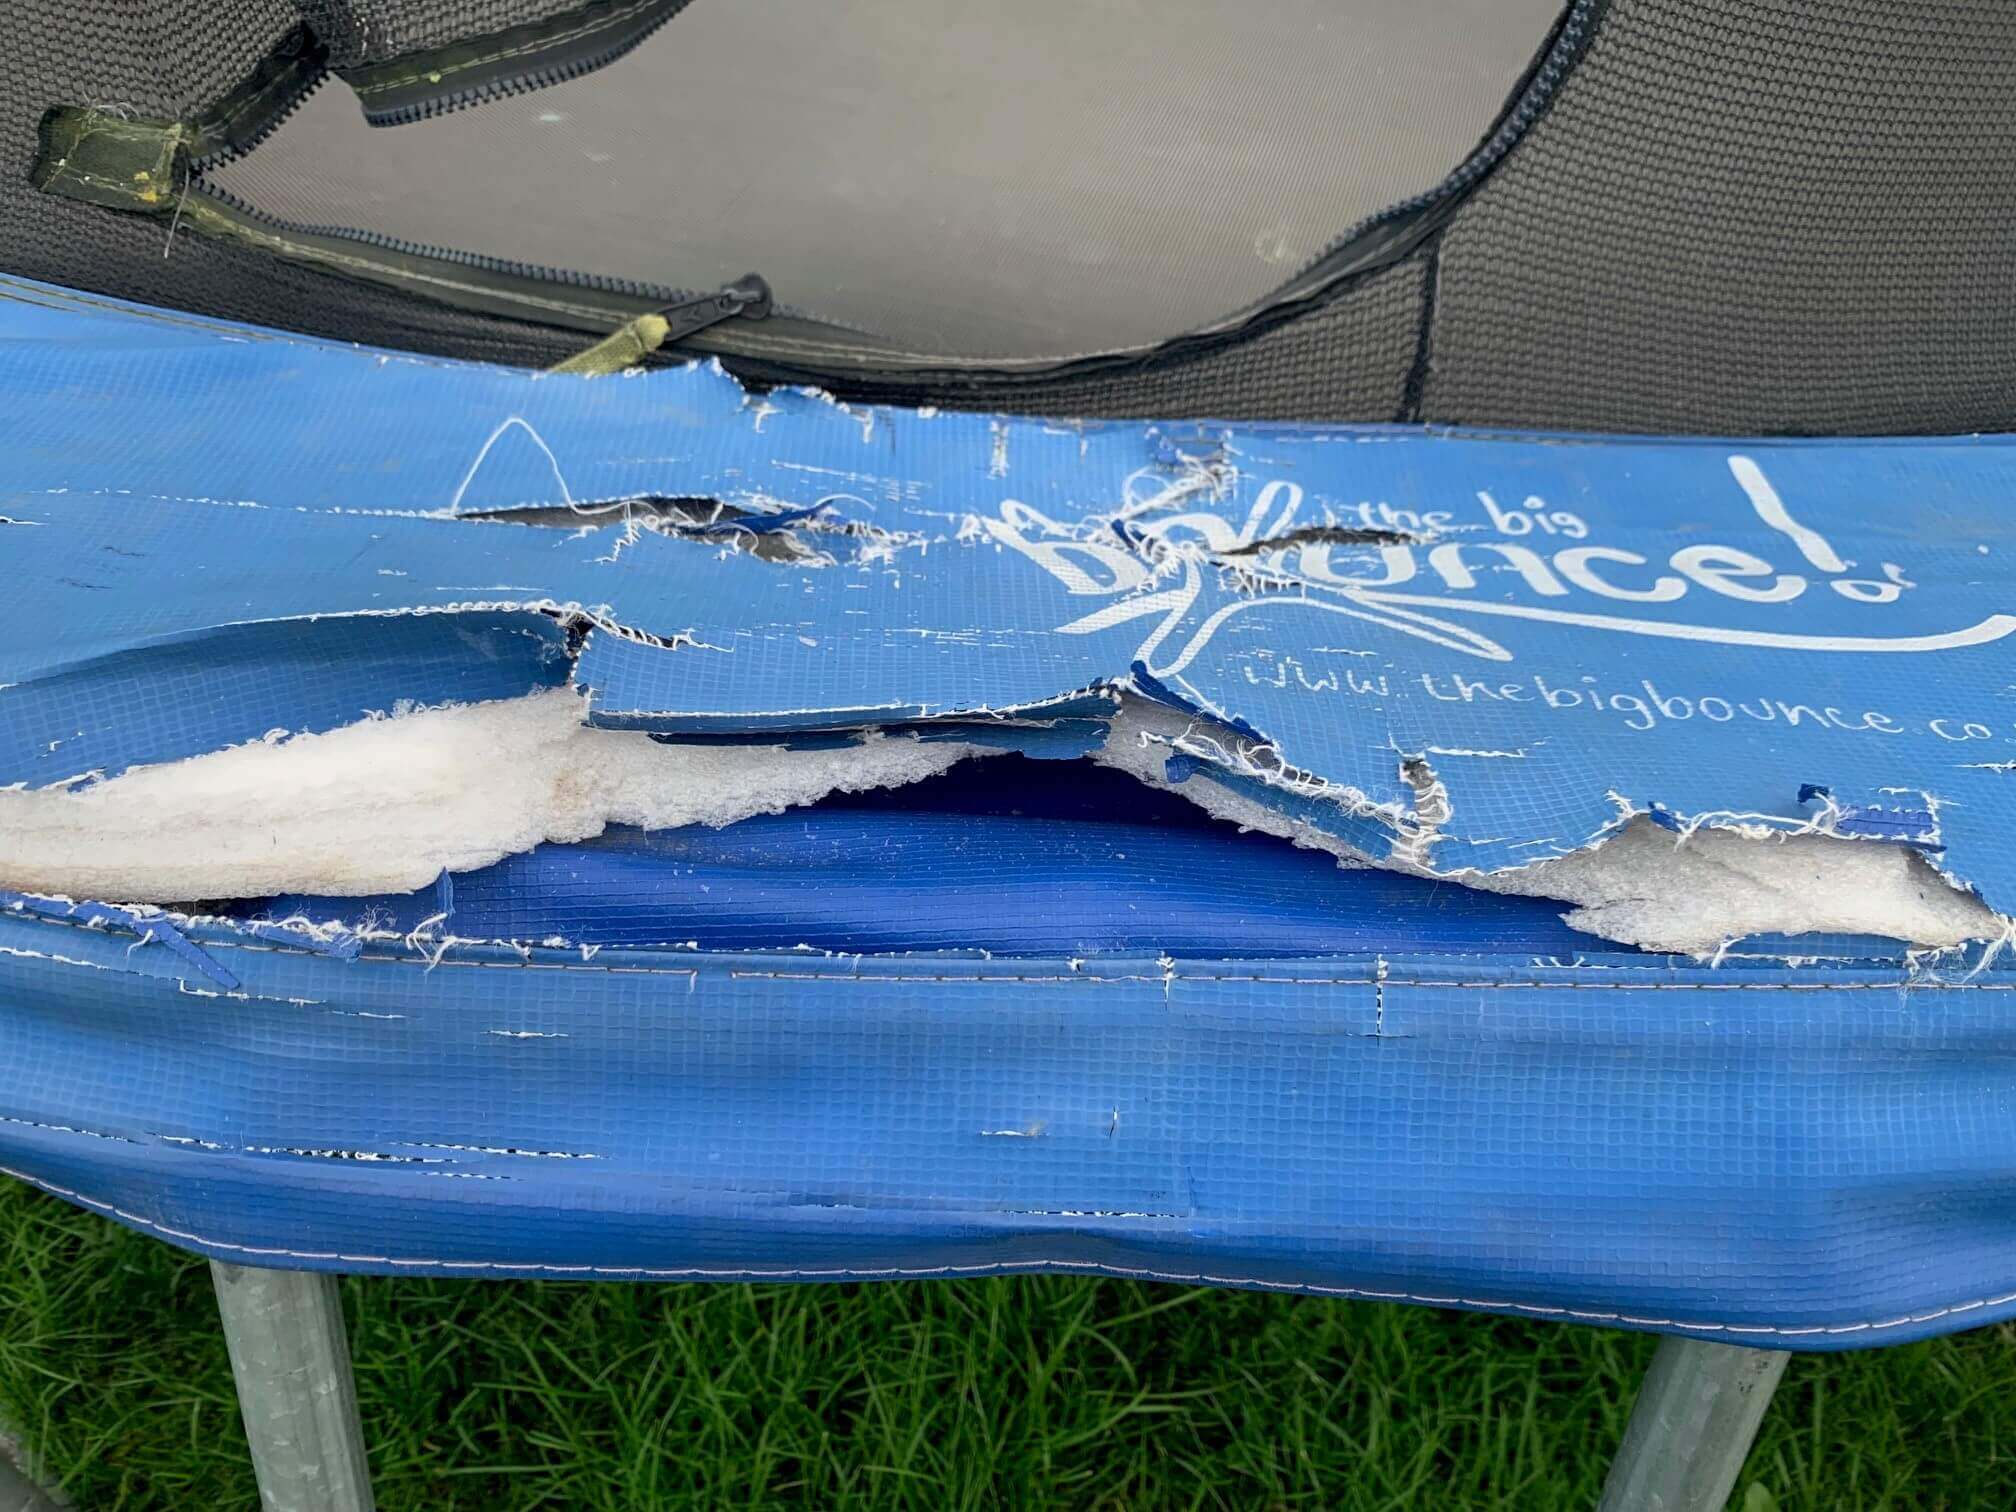 Broken pads on a spring-based trampoline